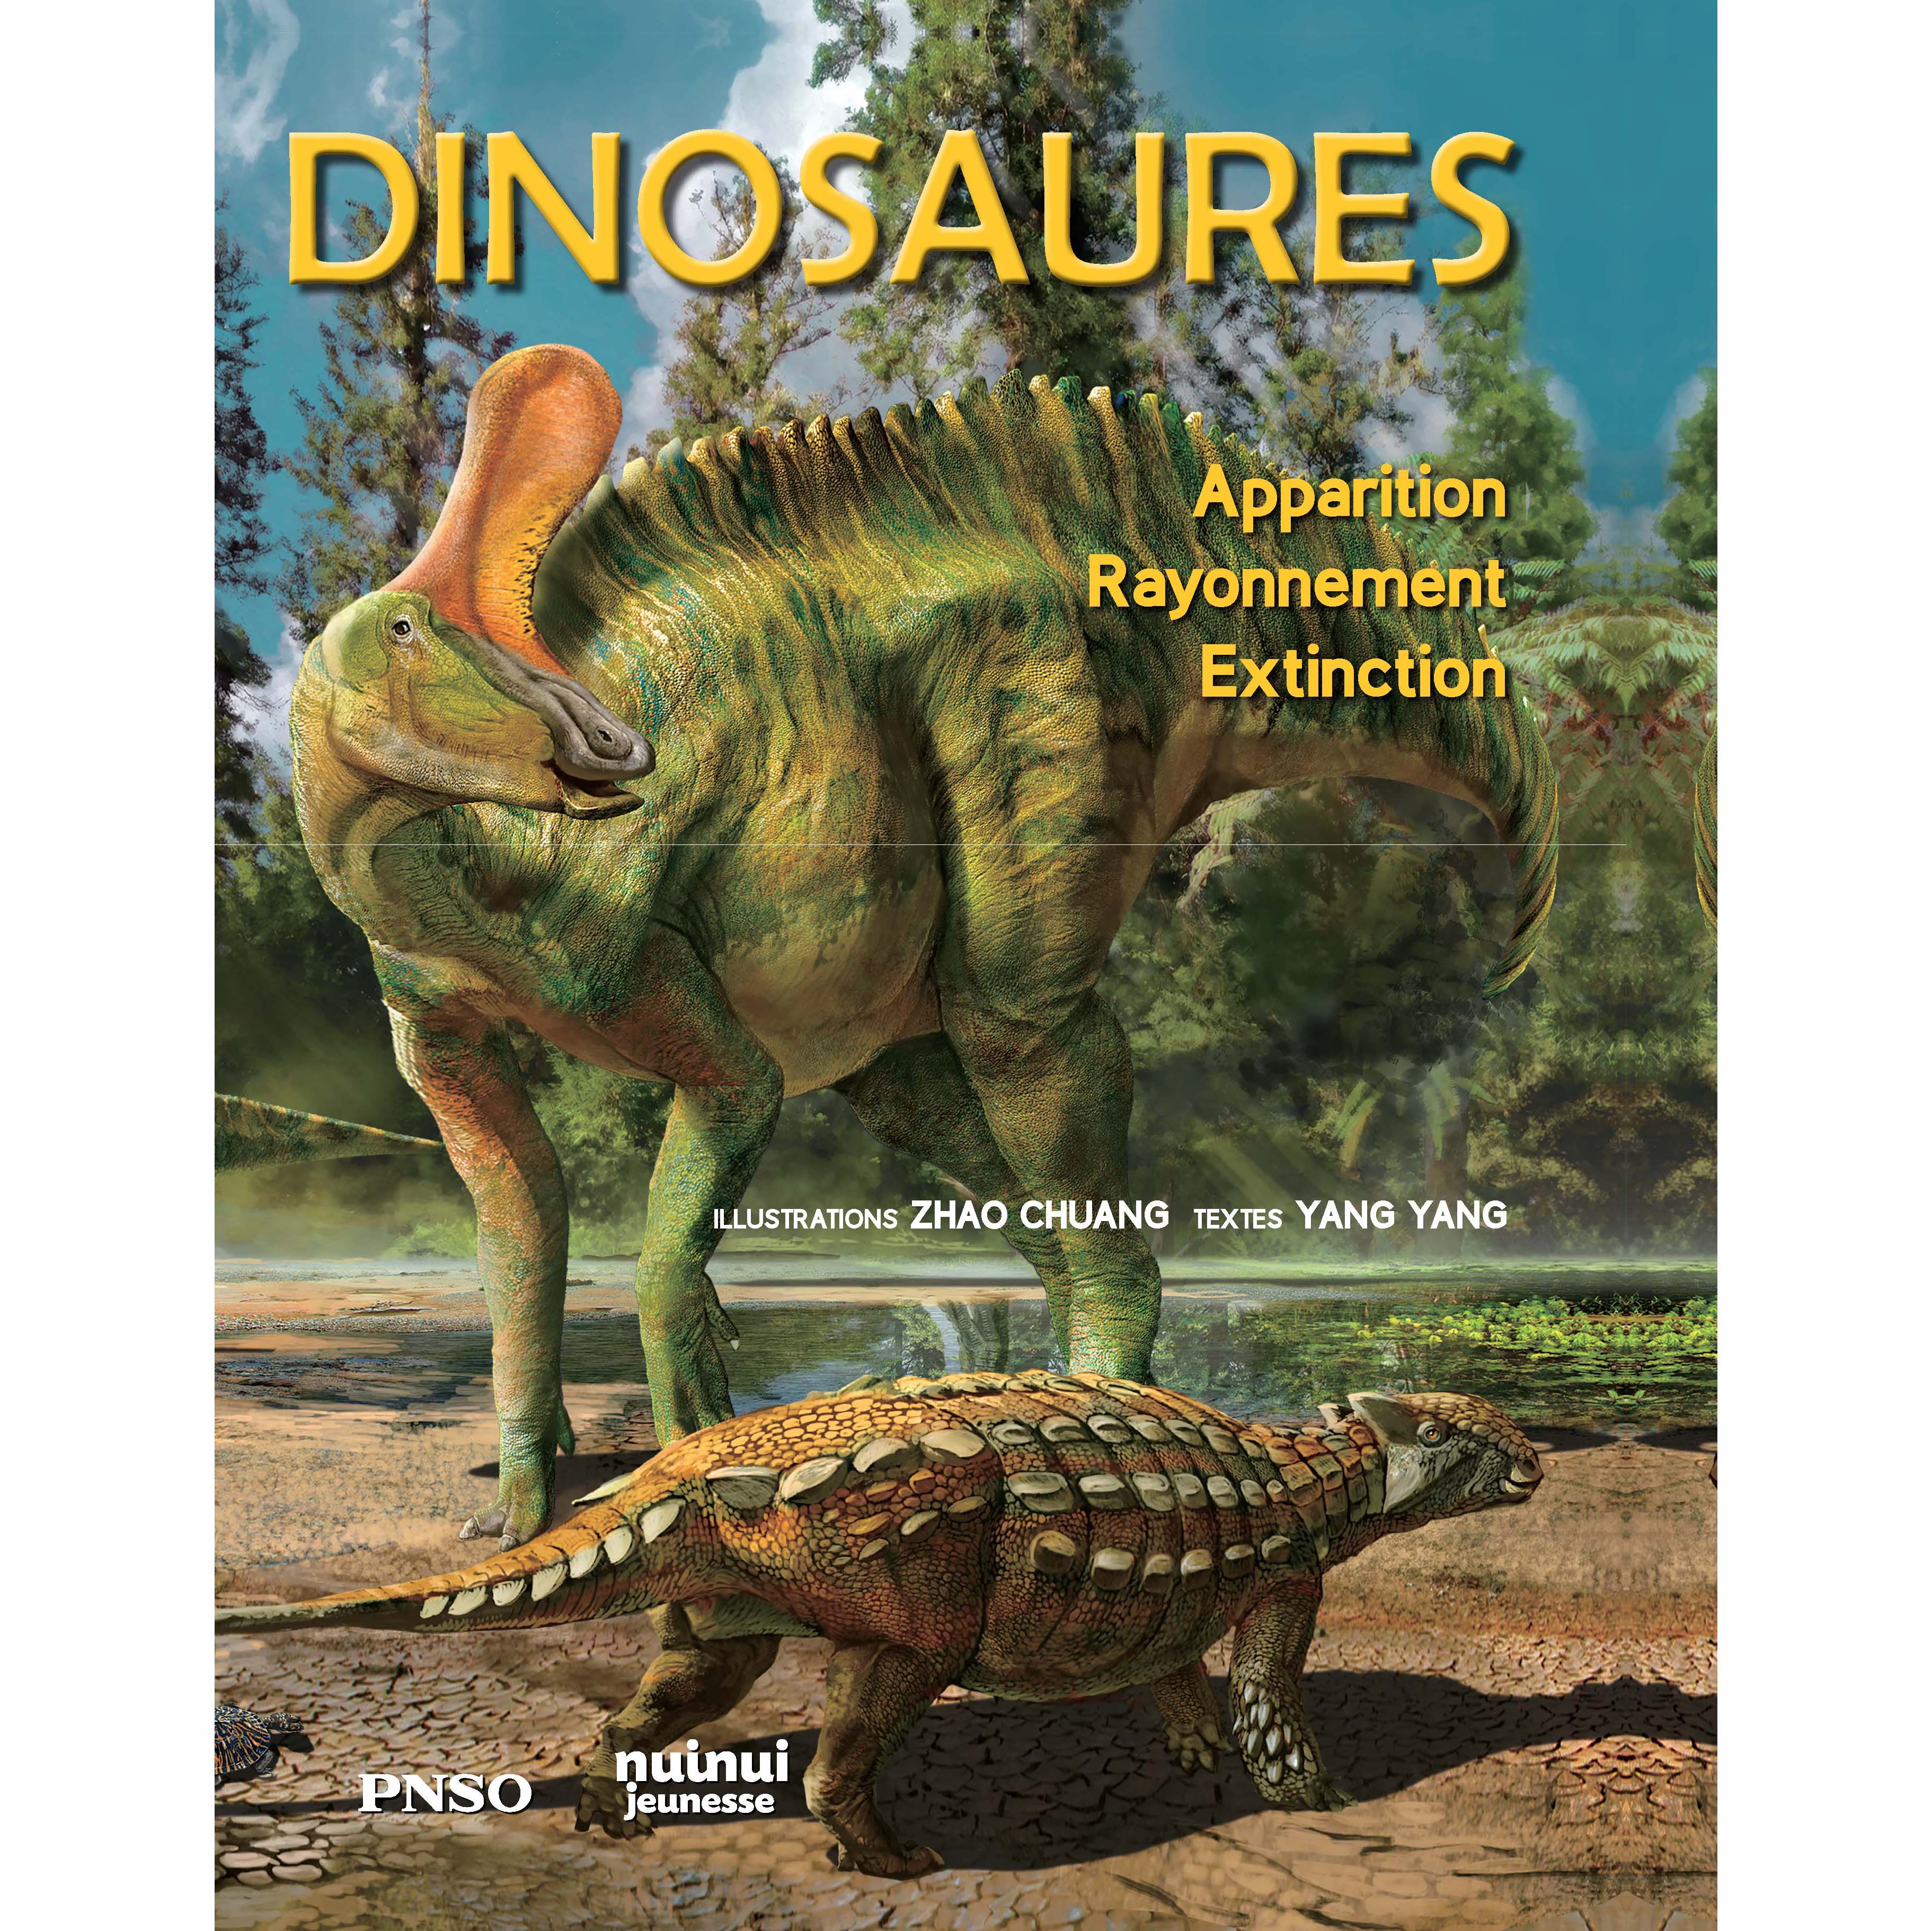 À la découverte des dinosaures – Éditions Petits Génies